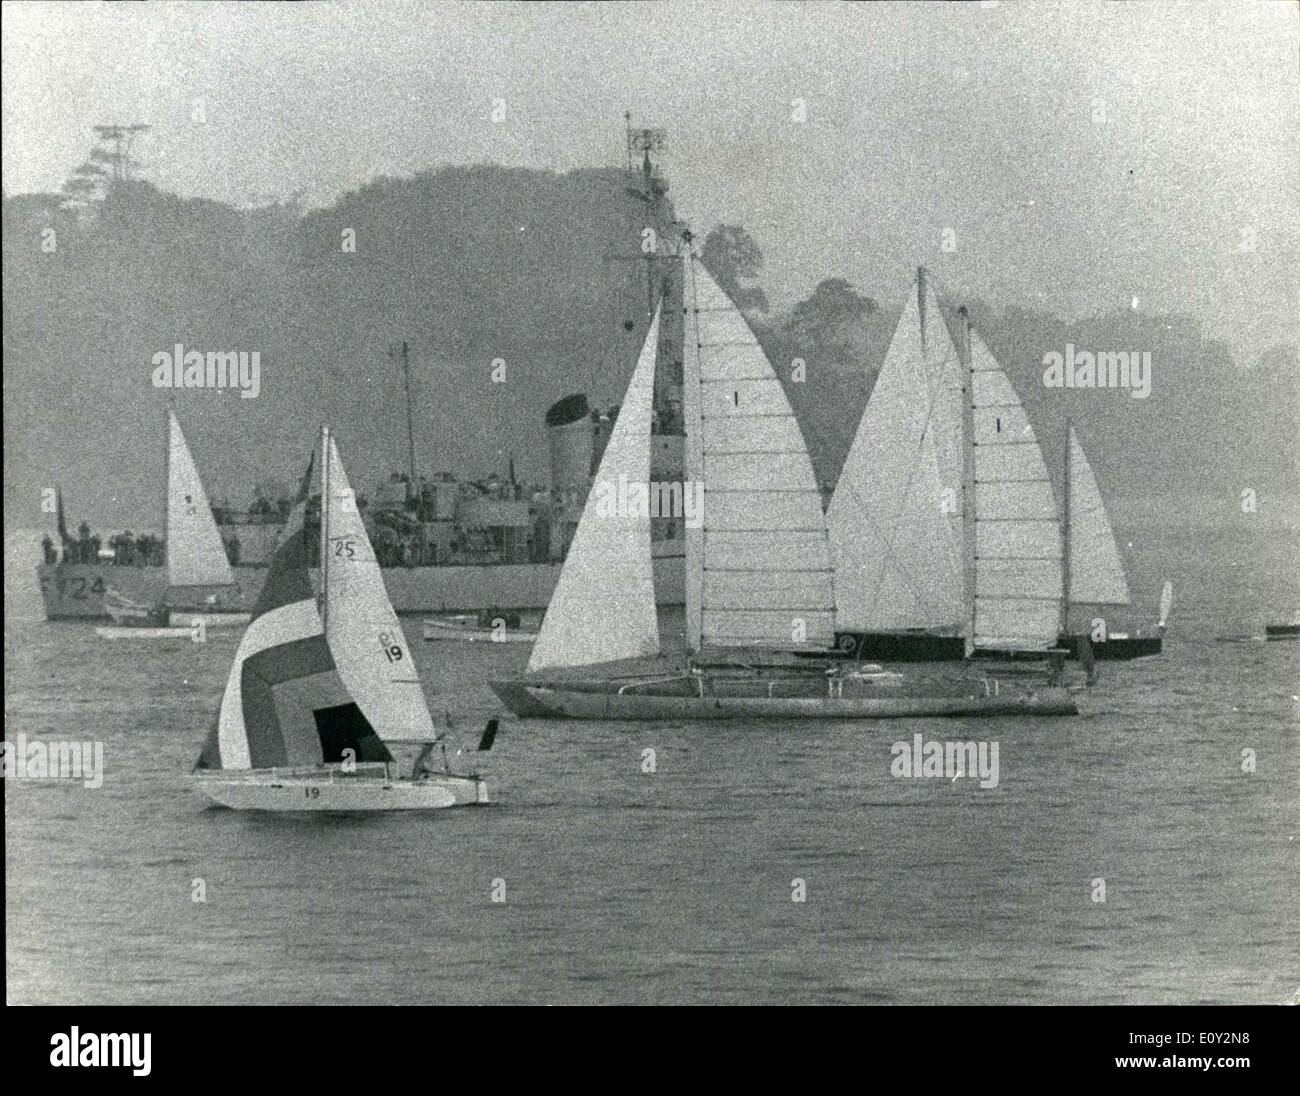 Giugno 06, 1968 - inizio con una singola mano Transalatinc Yacht Race da Plymouth: 35 Yachts esposte da Plymouth ieri Foto Stock